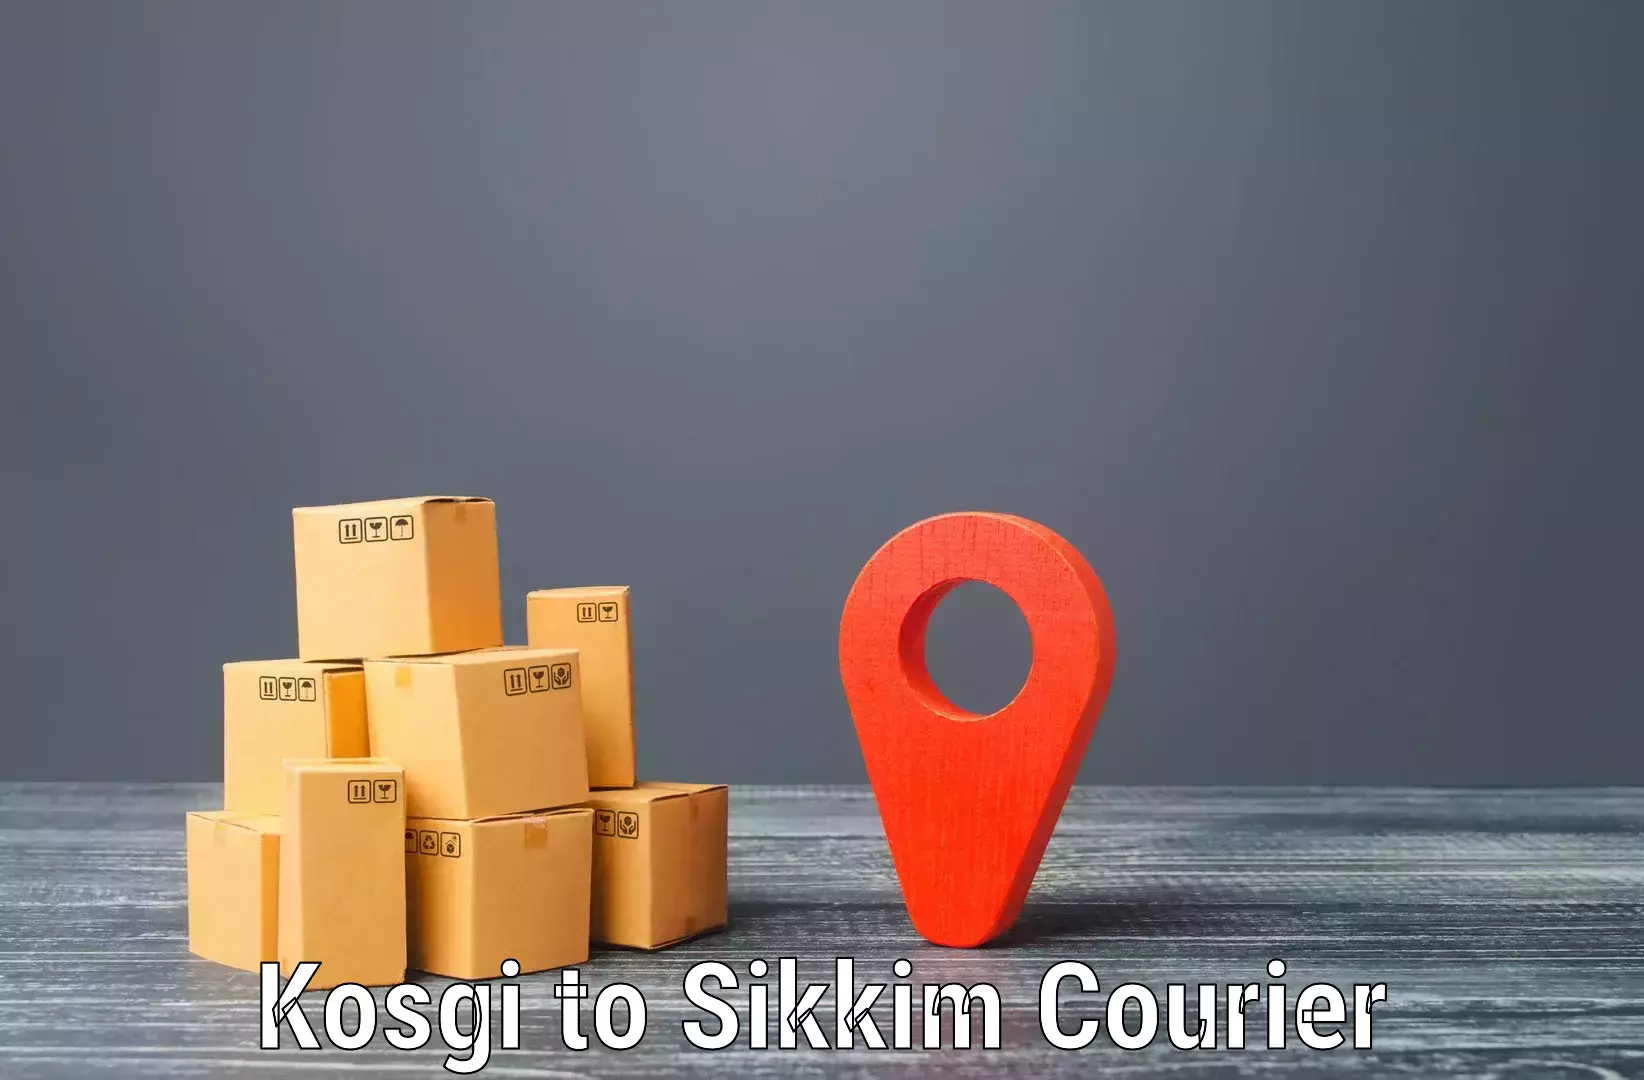 Doorstep delivery service Kosgi to North Sikkim